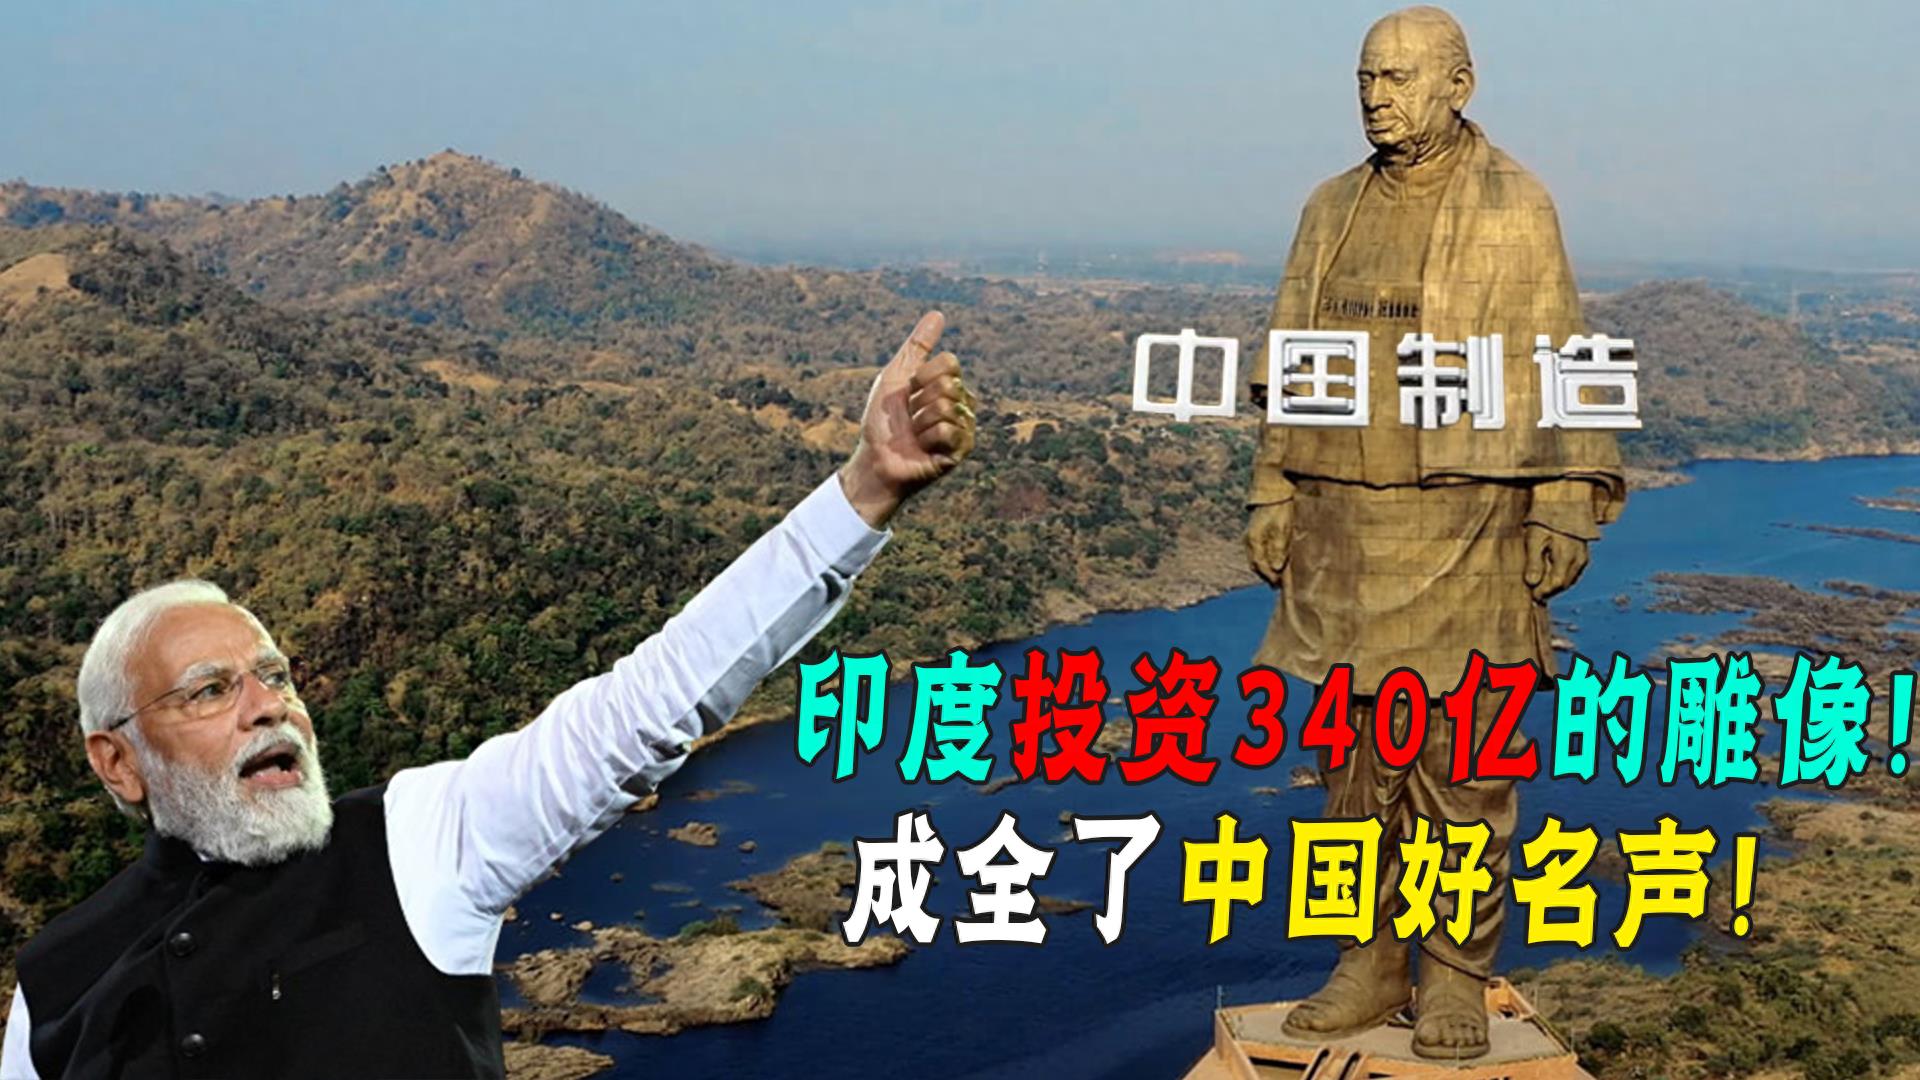 印度打造全球最高雕像，耗时五年花费340亿，成全了中国好名声！